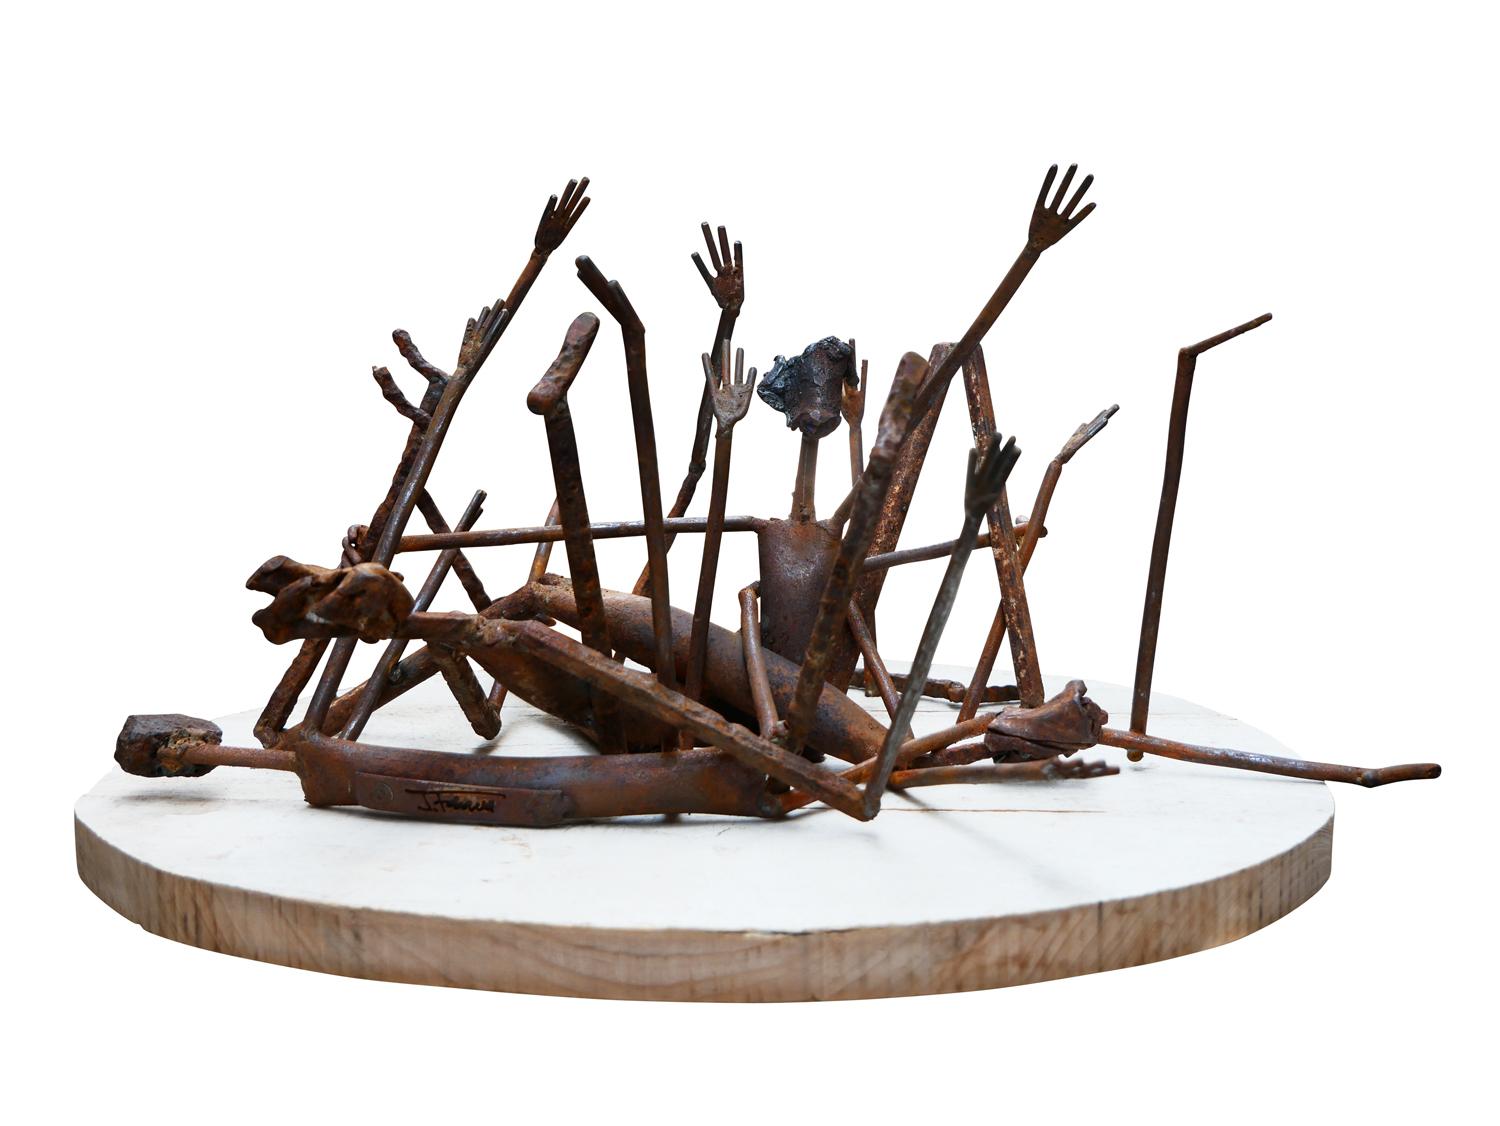 Jack Farrell Figurative Sculpture – „Twister“ Modernistische abstrakte figurative Skulptur aus Stahl und Holz